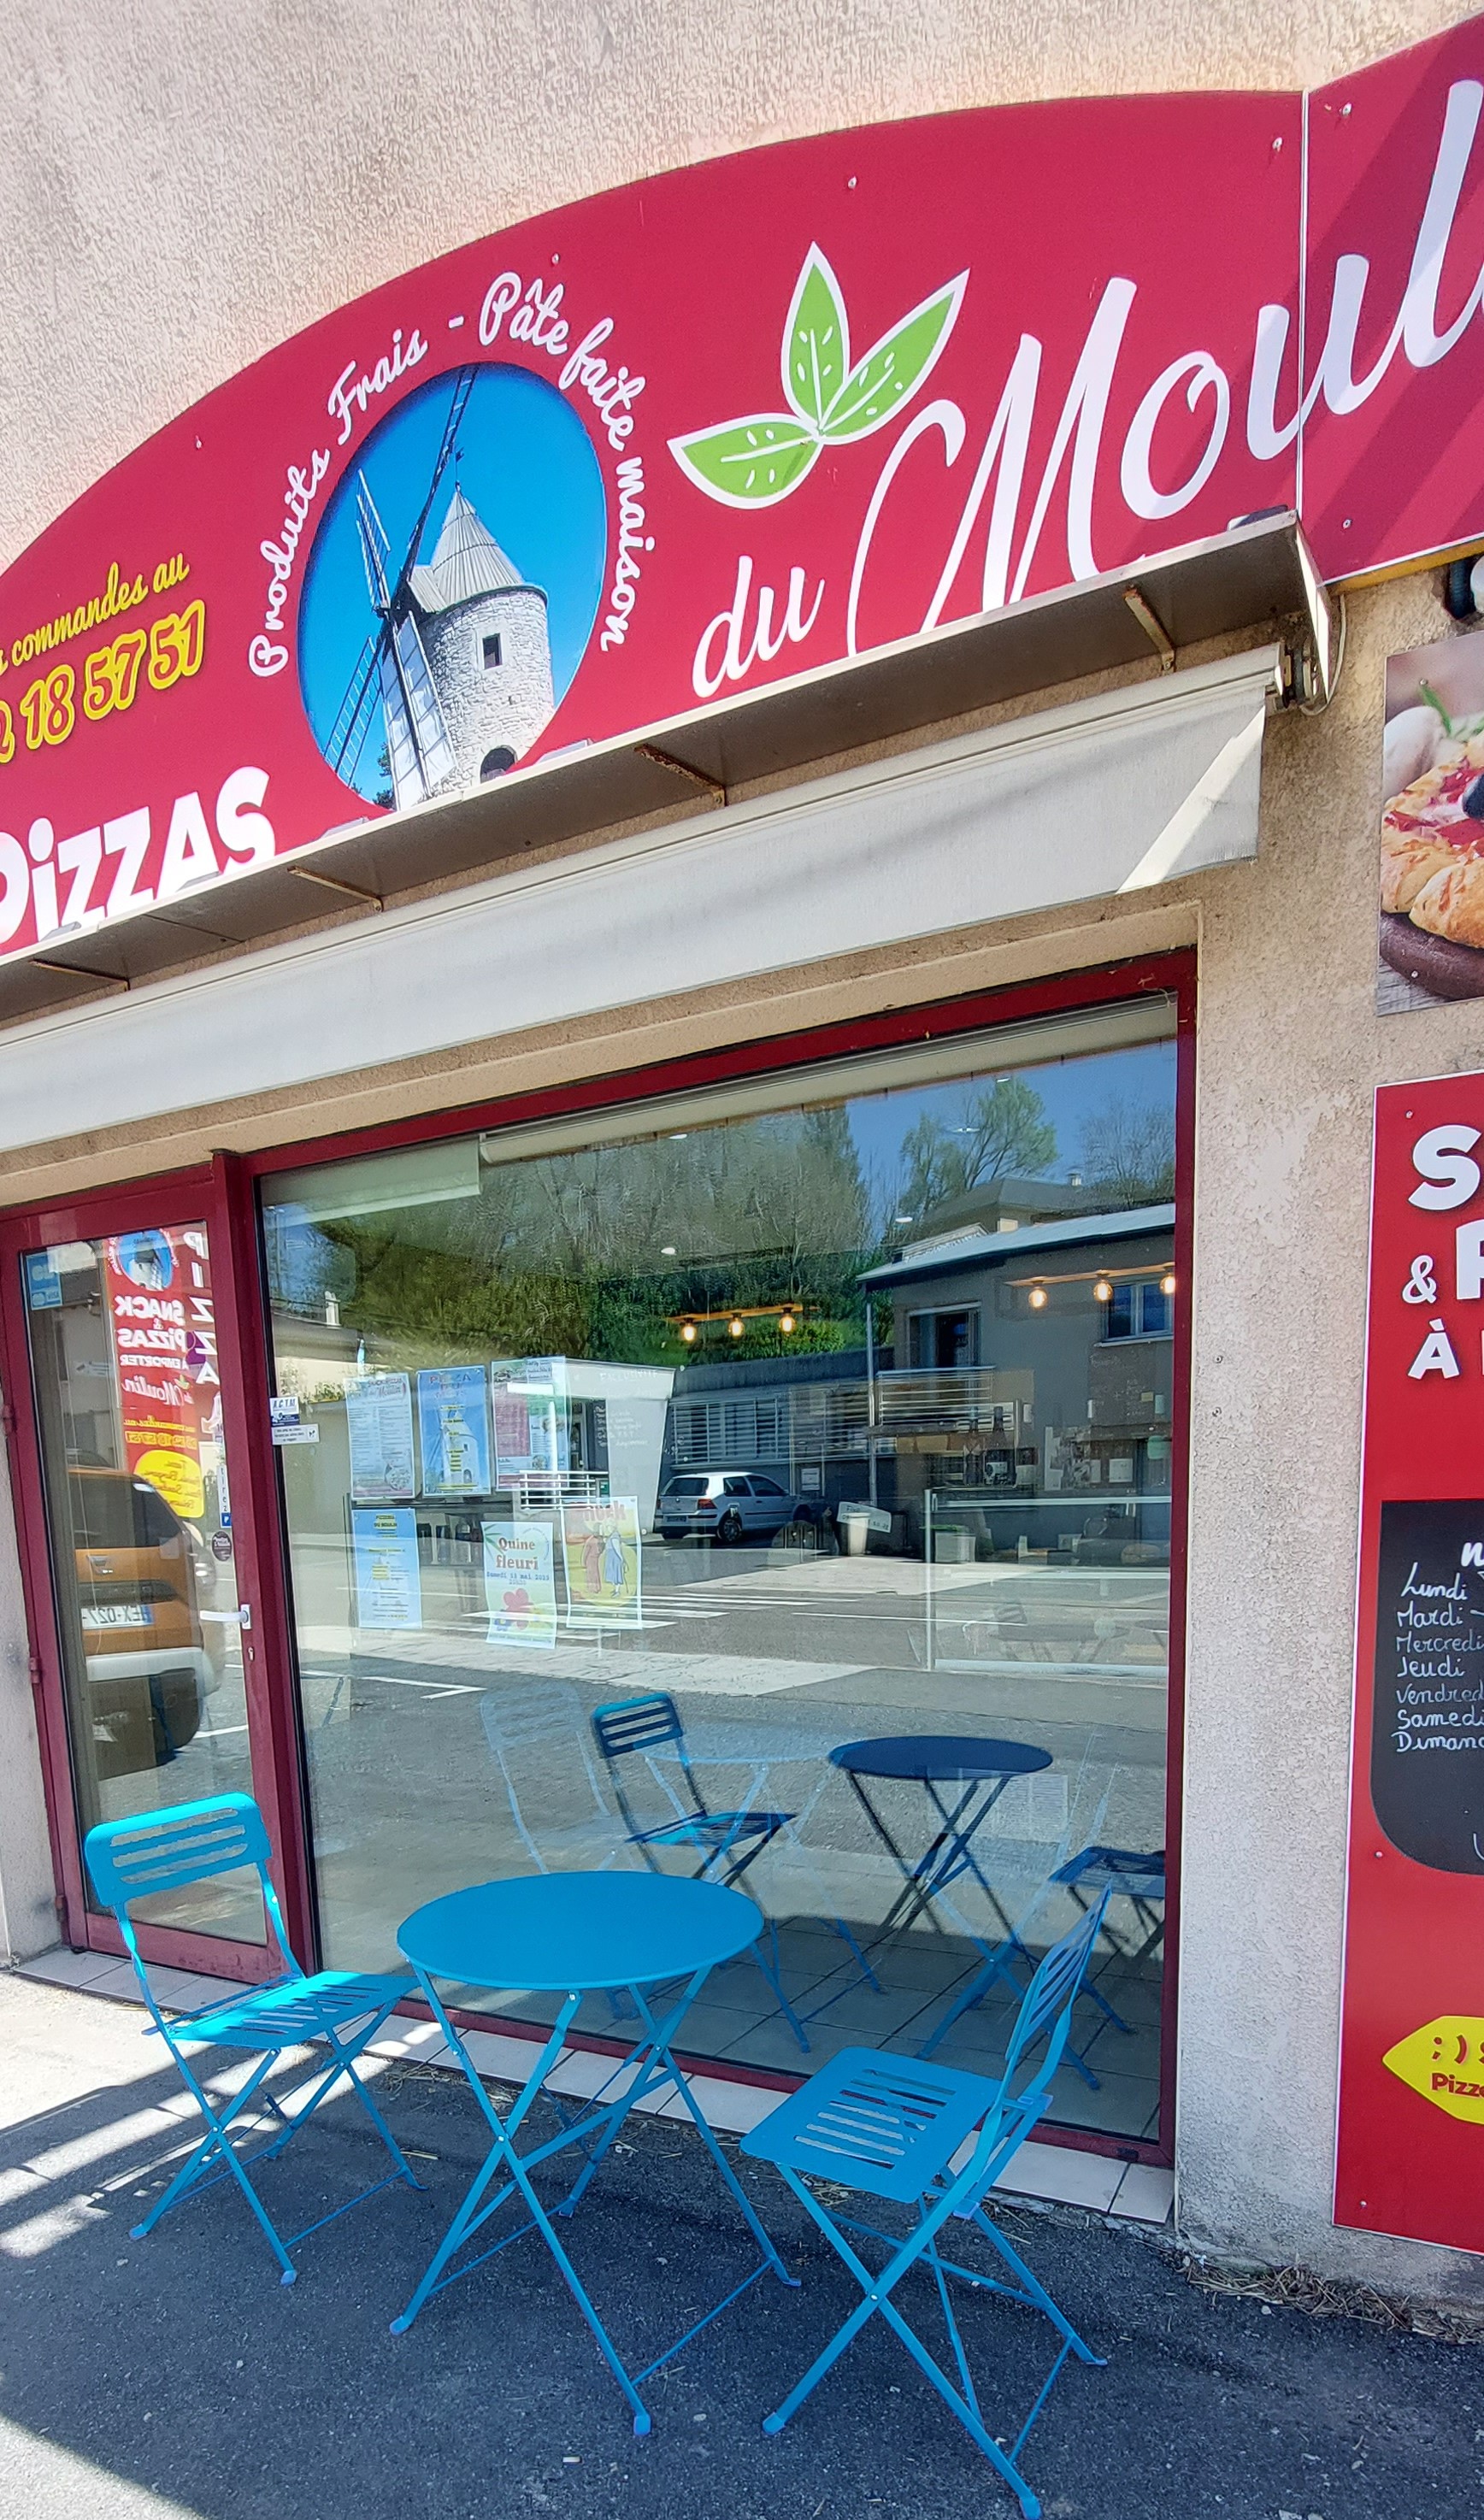 🌈 VENTE de mon fond de commerce pizzeria / snack a emporter
sur la commune 12240 Rieupeyroux AVEYRON  en zone ZRR 🌭🍔🍕🍟

💥Déjà la RETRAITE pour mes 65 ans qui se prépare 🥲

🌺avec un superbe emplacement entre Villefranche de Rouergue et Rodez
♦️ tenue depuis 3 ans et CA toujours en progression
🔥 2021 création de la PIZZERIA
🔥 2022 agrandissement création d'un SNACK
🔥 2023 rajout d'un DISTRIBUTEUR DE PIZZAS en complément devant la pizzeria
vente cause retraite
prix : 112 000 €
curieux et agences s'abstenir
Pas de gérance possible